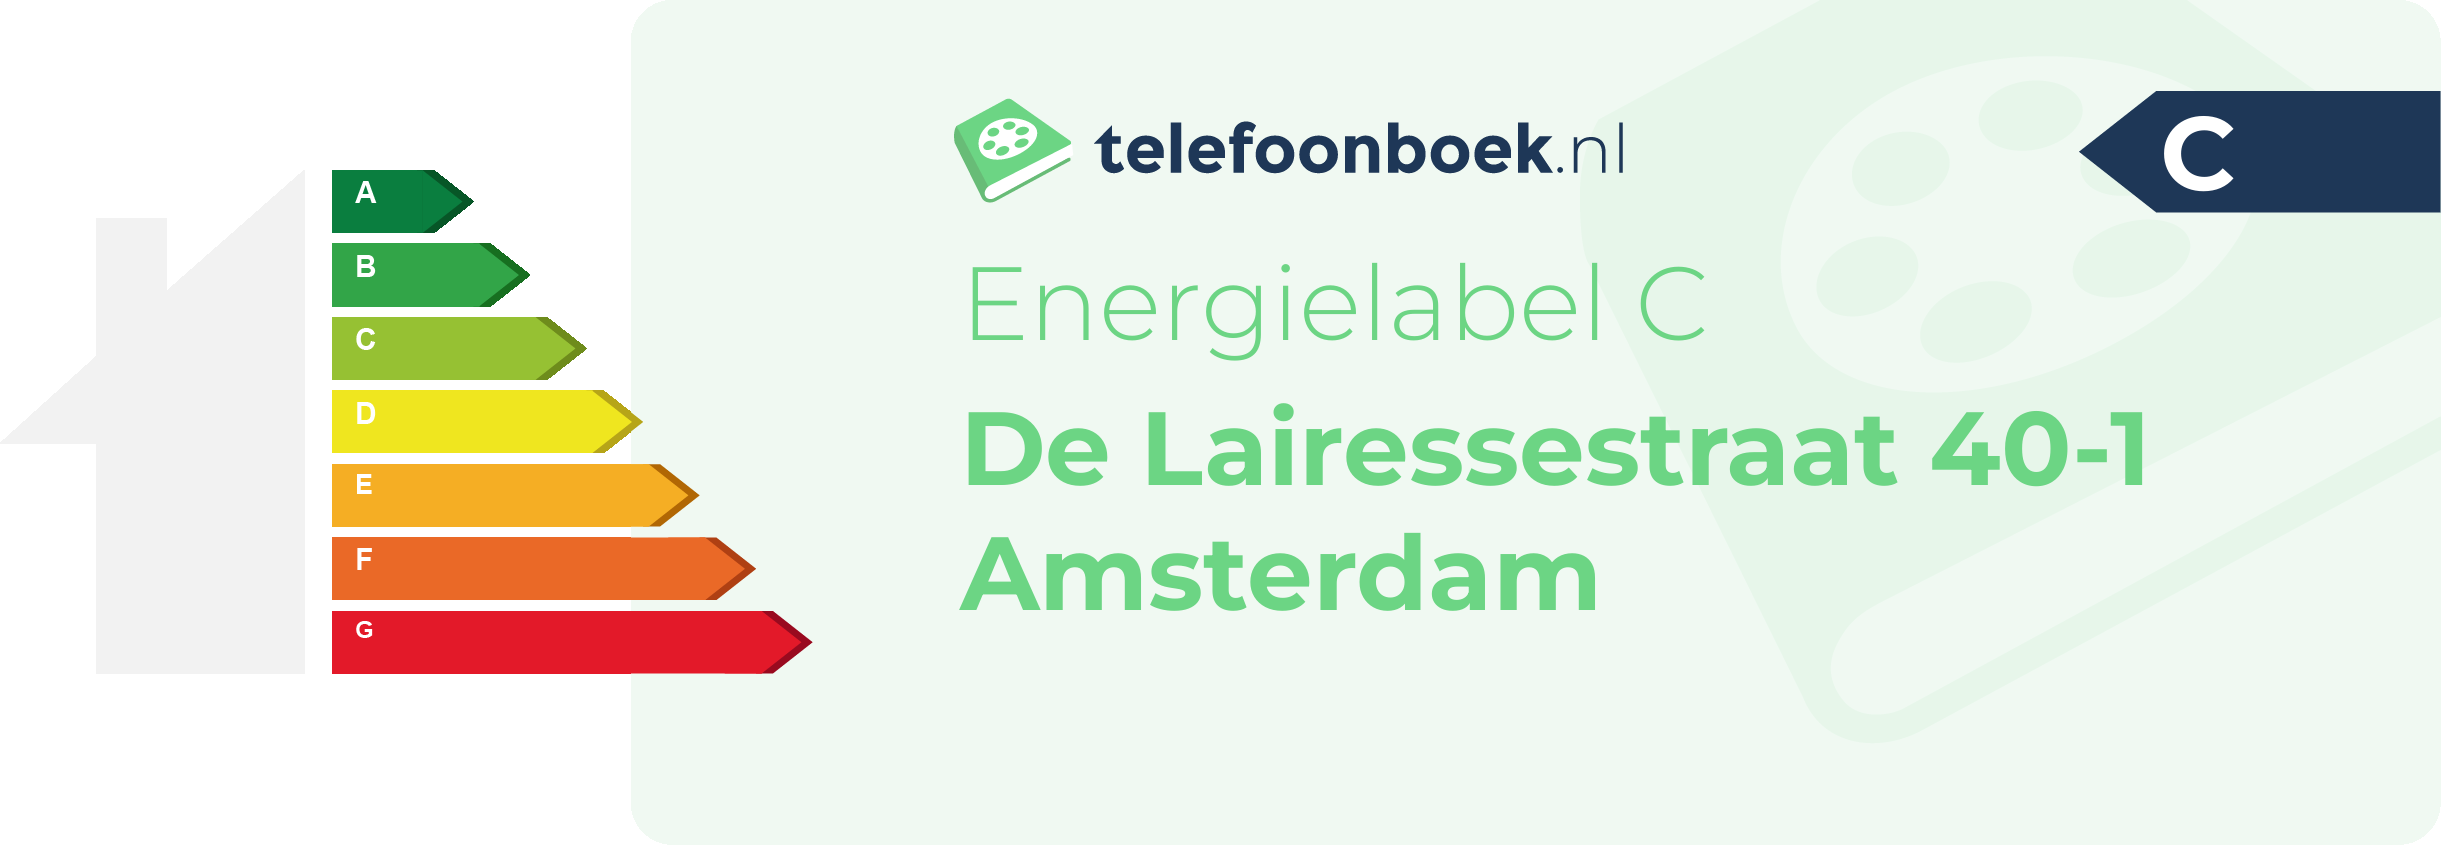 Energielabel De Lairessestraat 40-1 Amsterdam